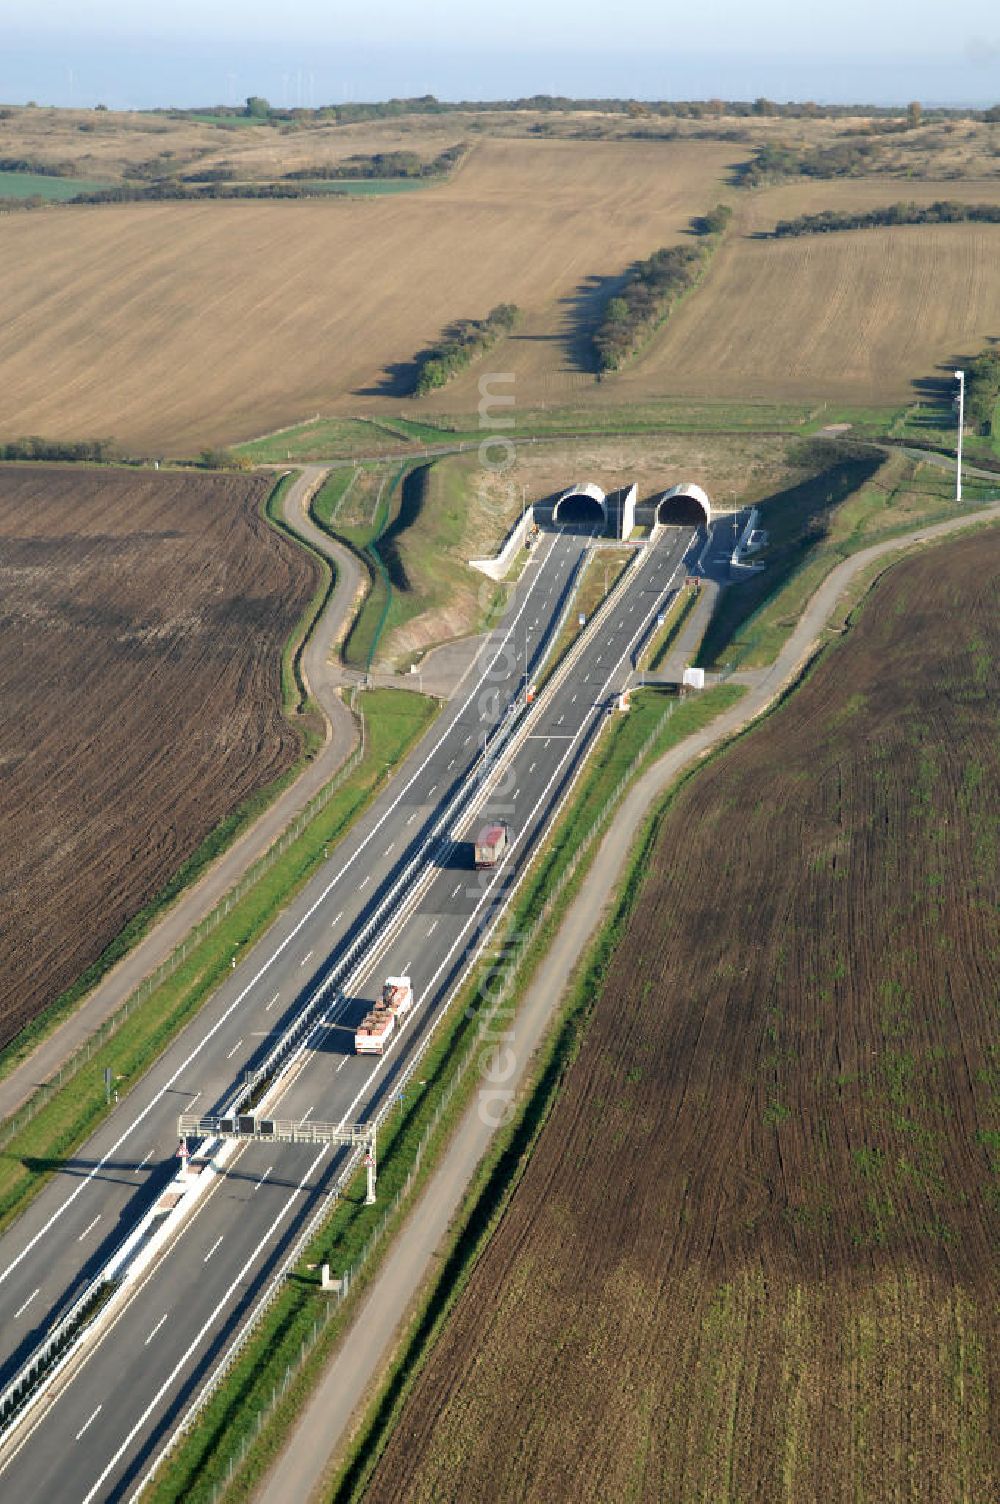 Aerial photograph Heldrungen - Blick auf den Schmücketunnel bei Heldrungen in Thüringen. Der Straßentunnel ist ein Teil der Autobahn A71 und unterquert den Höhenzug Schmücke. Gebaut wurde der Tunnel zwischen 2005 und 2009 nach der neuen österreichischen Tunnelbauweise (NÖT).Der Tunnel besteht aus zwei parallelen Röhren mit jeweils zwei Fahrspuren. Die maximale Länge des Tunnels beträgt 1729 Meter. Den Bau des Tunnels übernahm die DEGES. Kontakt DEGES: DEGES, Deutsche Einheit Fernstraßenplanungs- und -bau GmbH, Zimmerstraße 54, 10117 Berlin, Tel. 49(0)30 20243 0, Fax 49(0)30 20243 291, Email: info@deges.de; Kontakt Bauüberwachung: BOL / BÜ Schmücketunnel, Hauptstraße 29, 06577 Oberheldrungen, Tel. 49(0)34673 7823 00, Fax 49(0)34673 7823 99, Email: schmuecketunnel@schuessler-plan.de